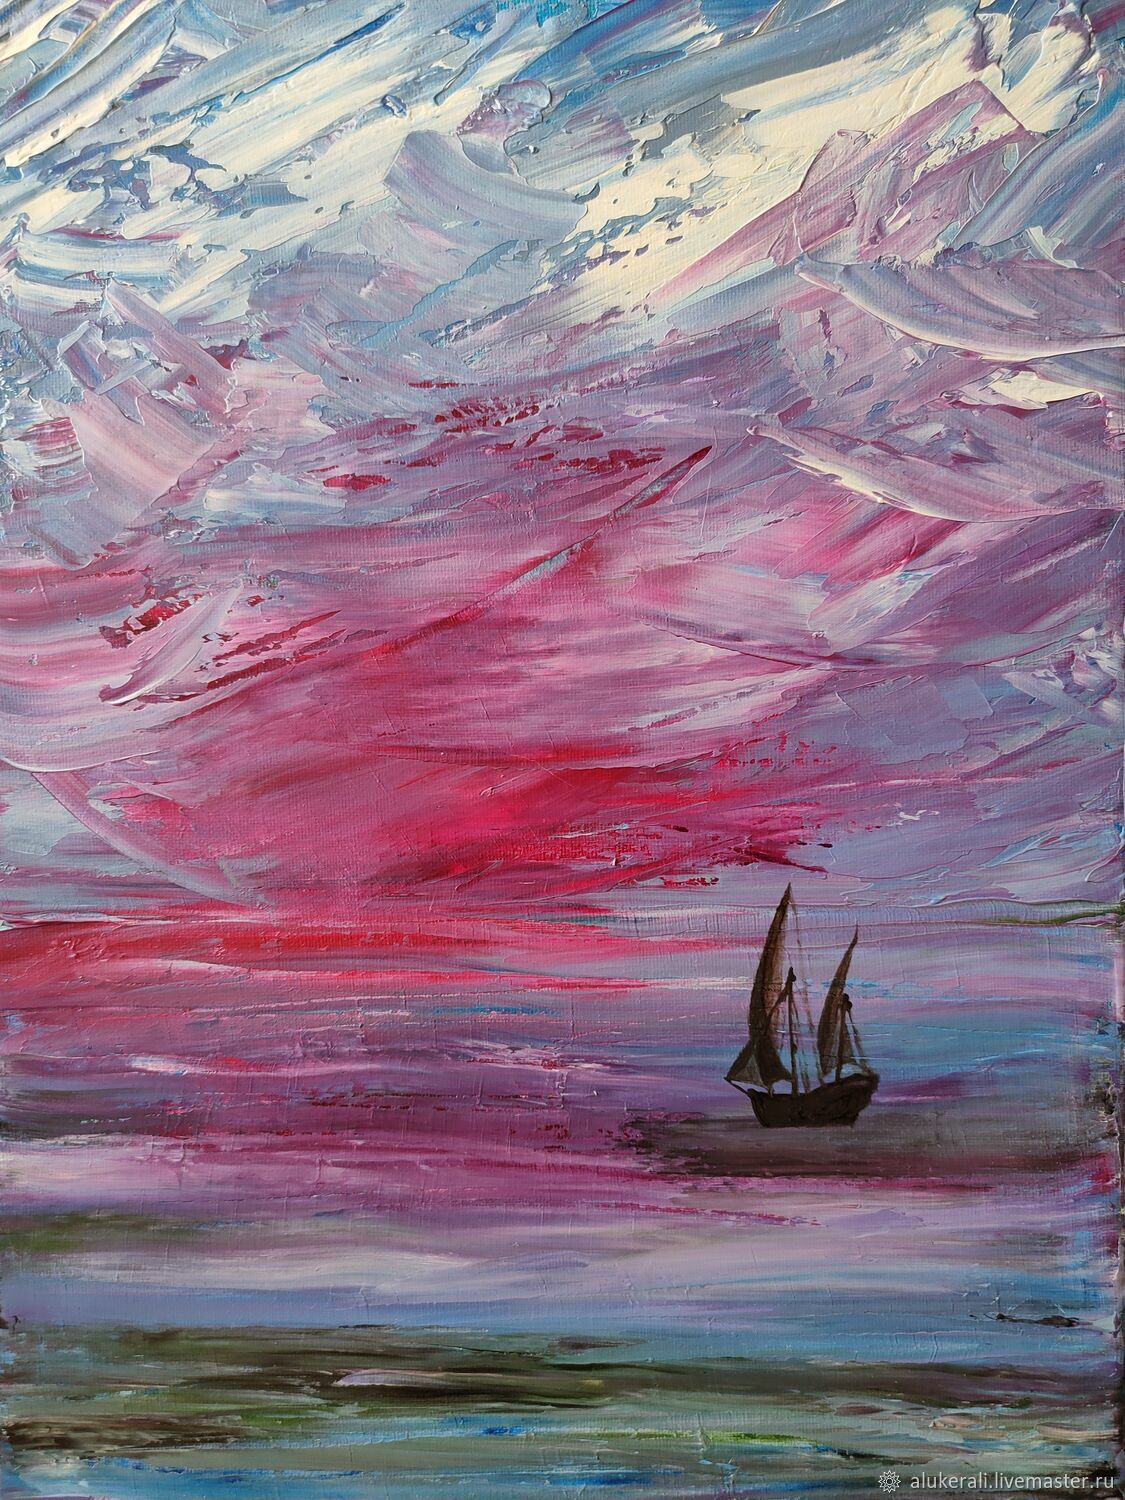   Море зовет... Картина маслом в стиле импрессионизм, Картины, Королев,  Фото №1